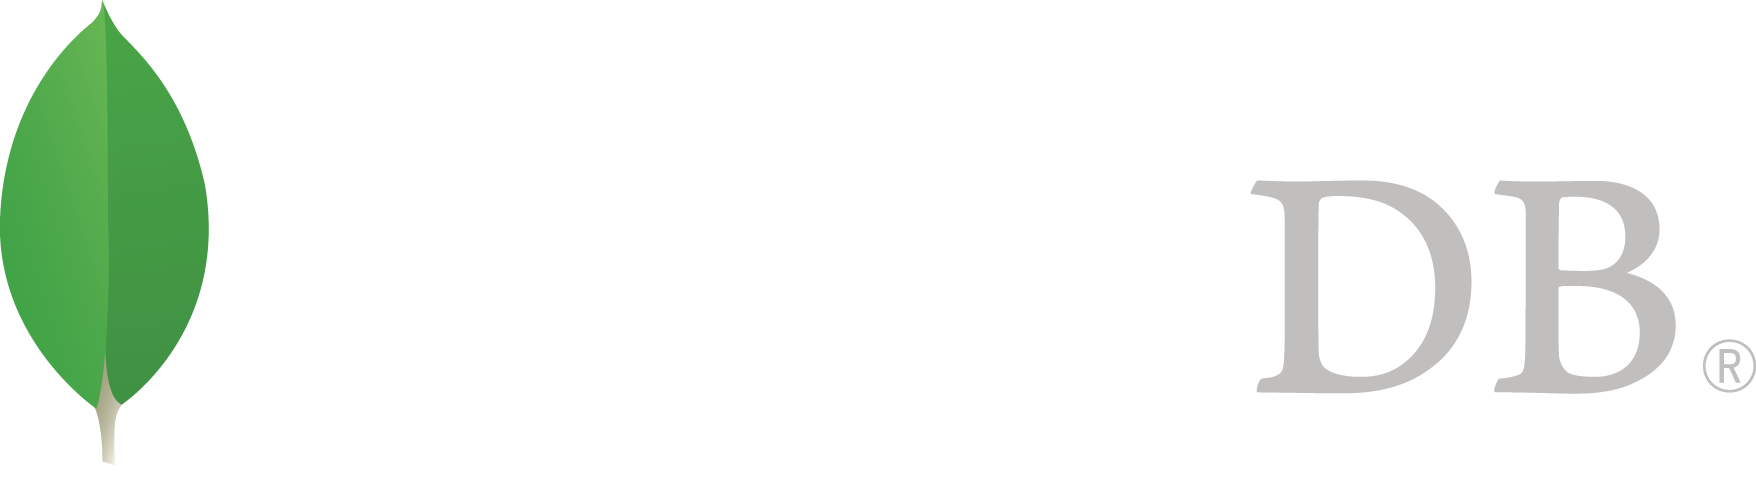 Logo Mongodb PNG - 35501